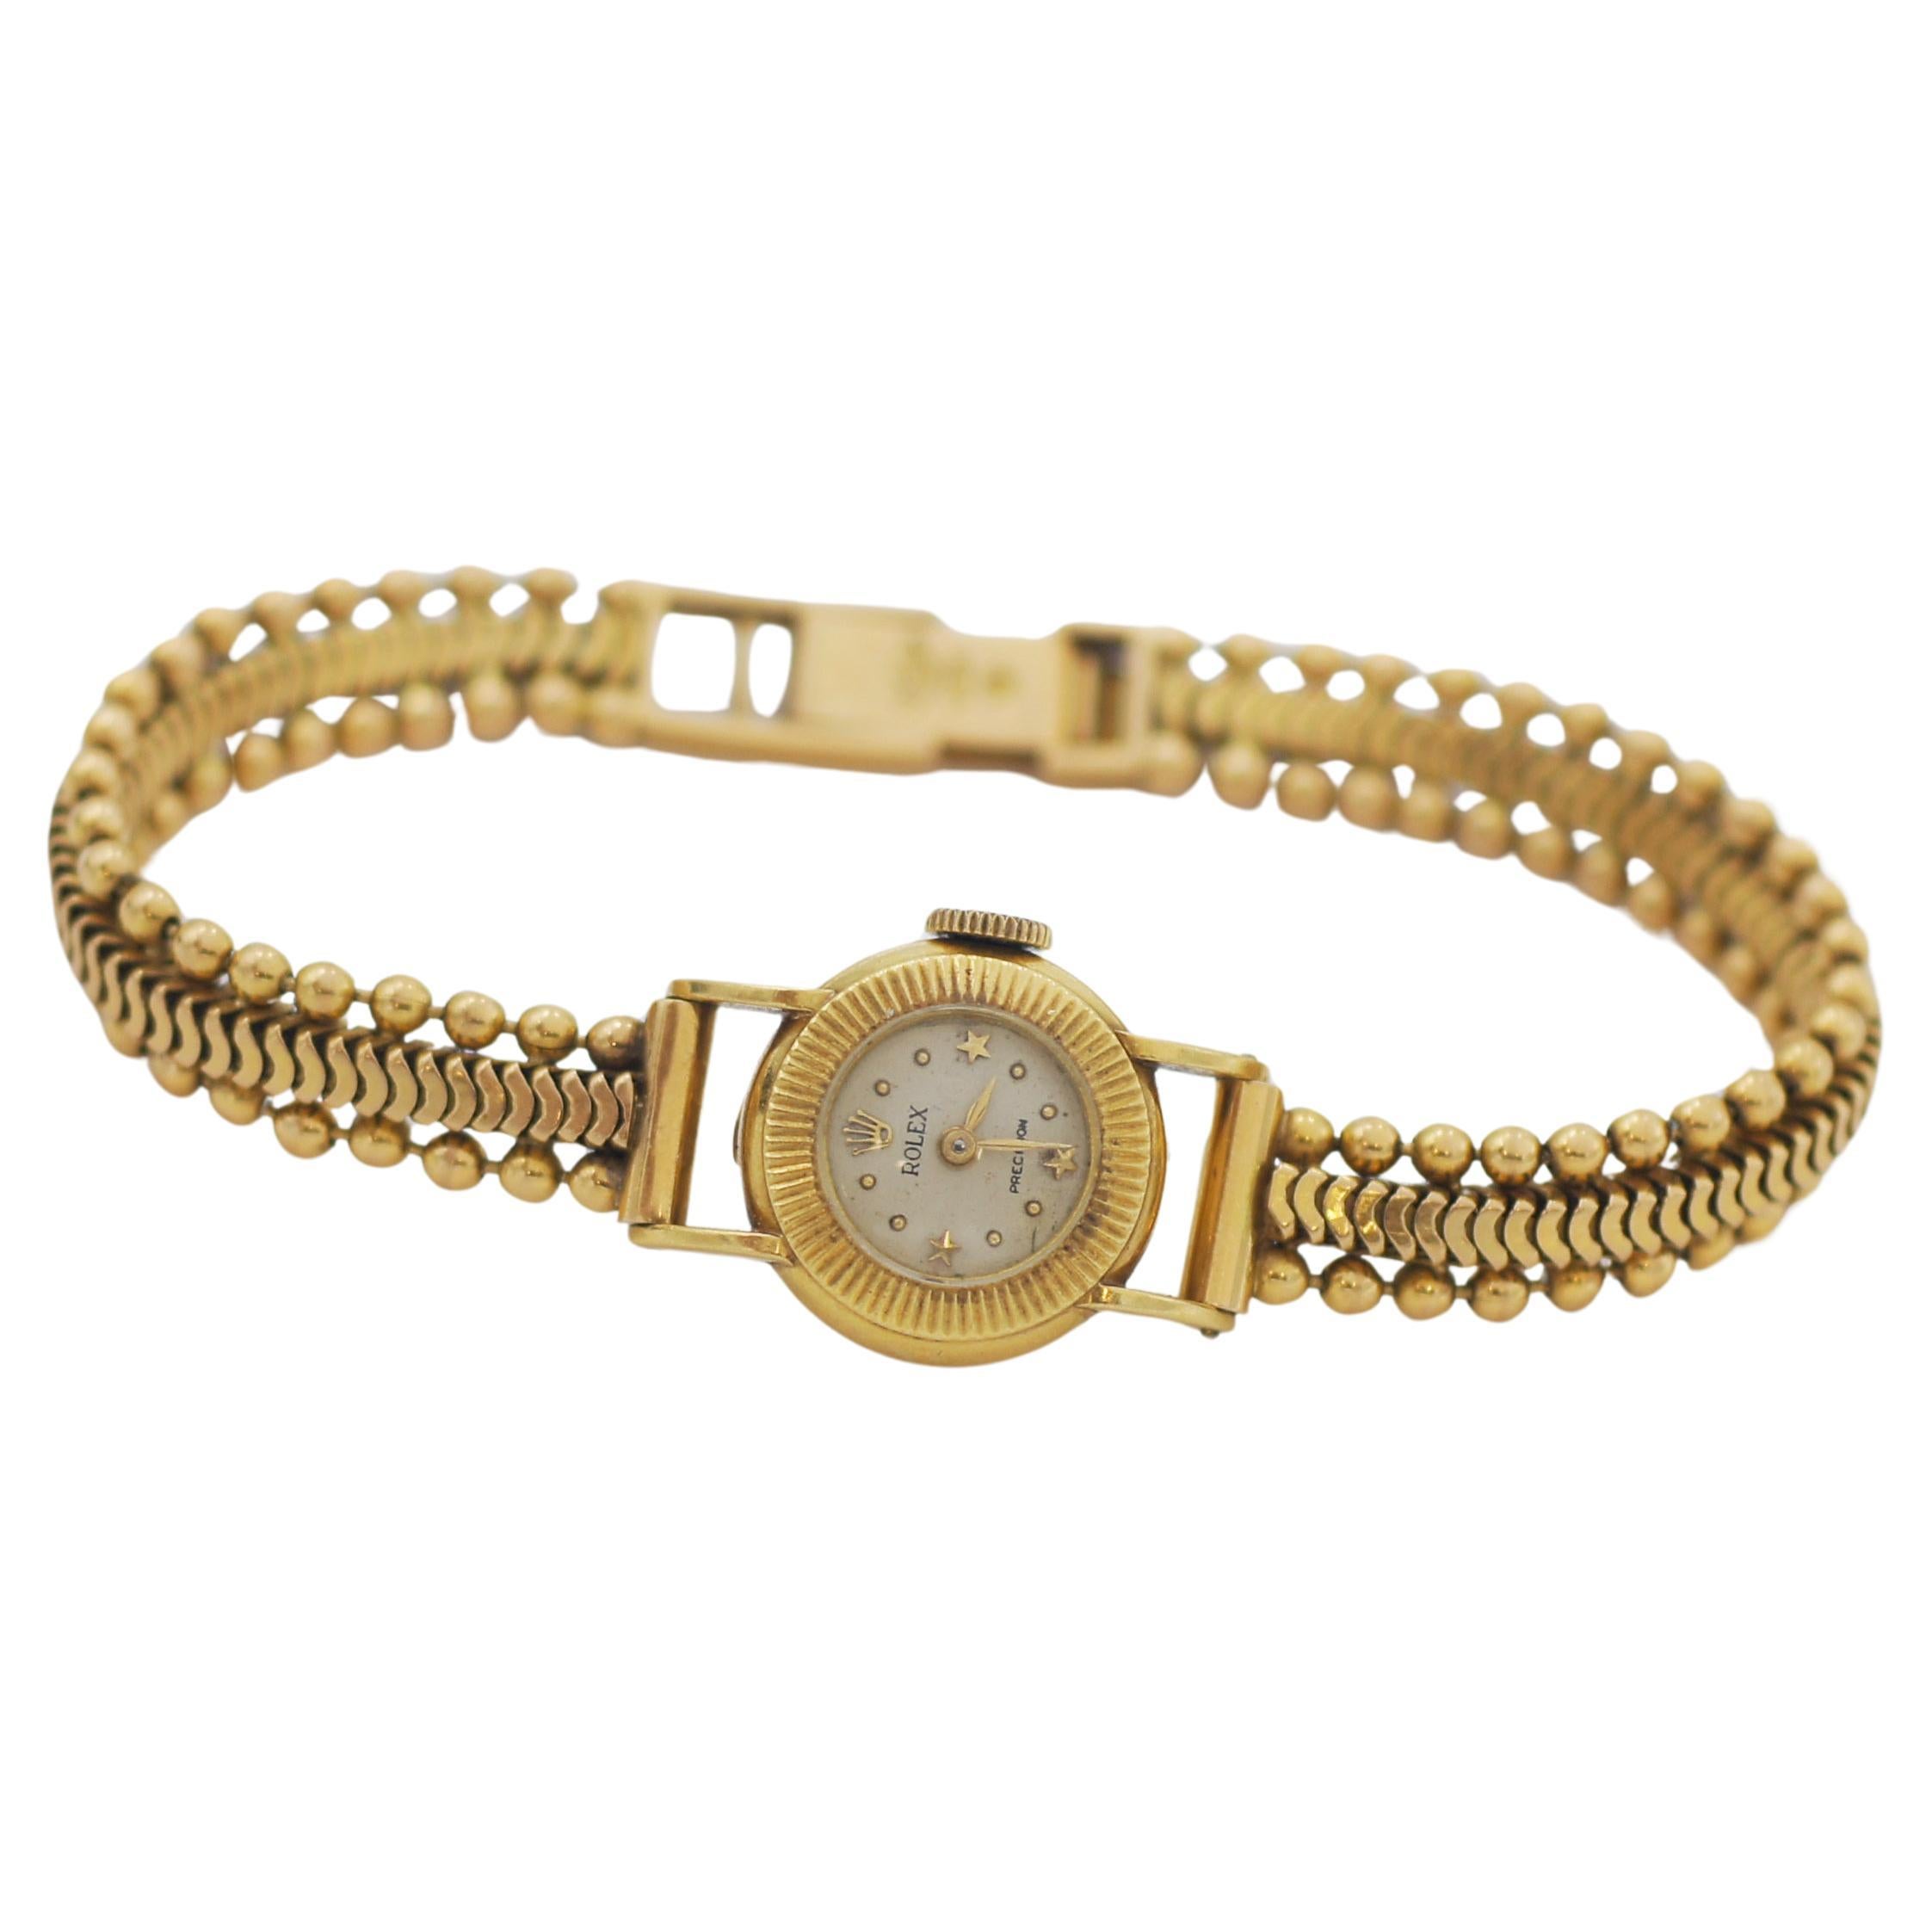 Rolex 18K Gold Vintage Precision Mechanische Uhr mit mechanischem Uhrwerk